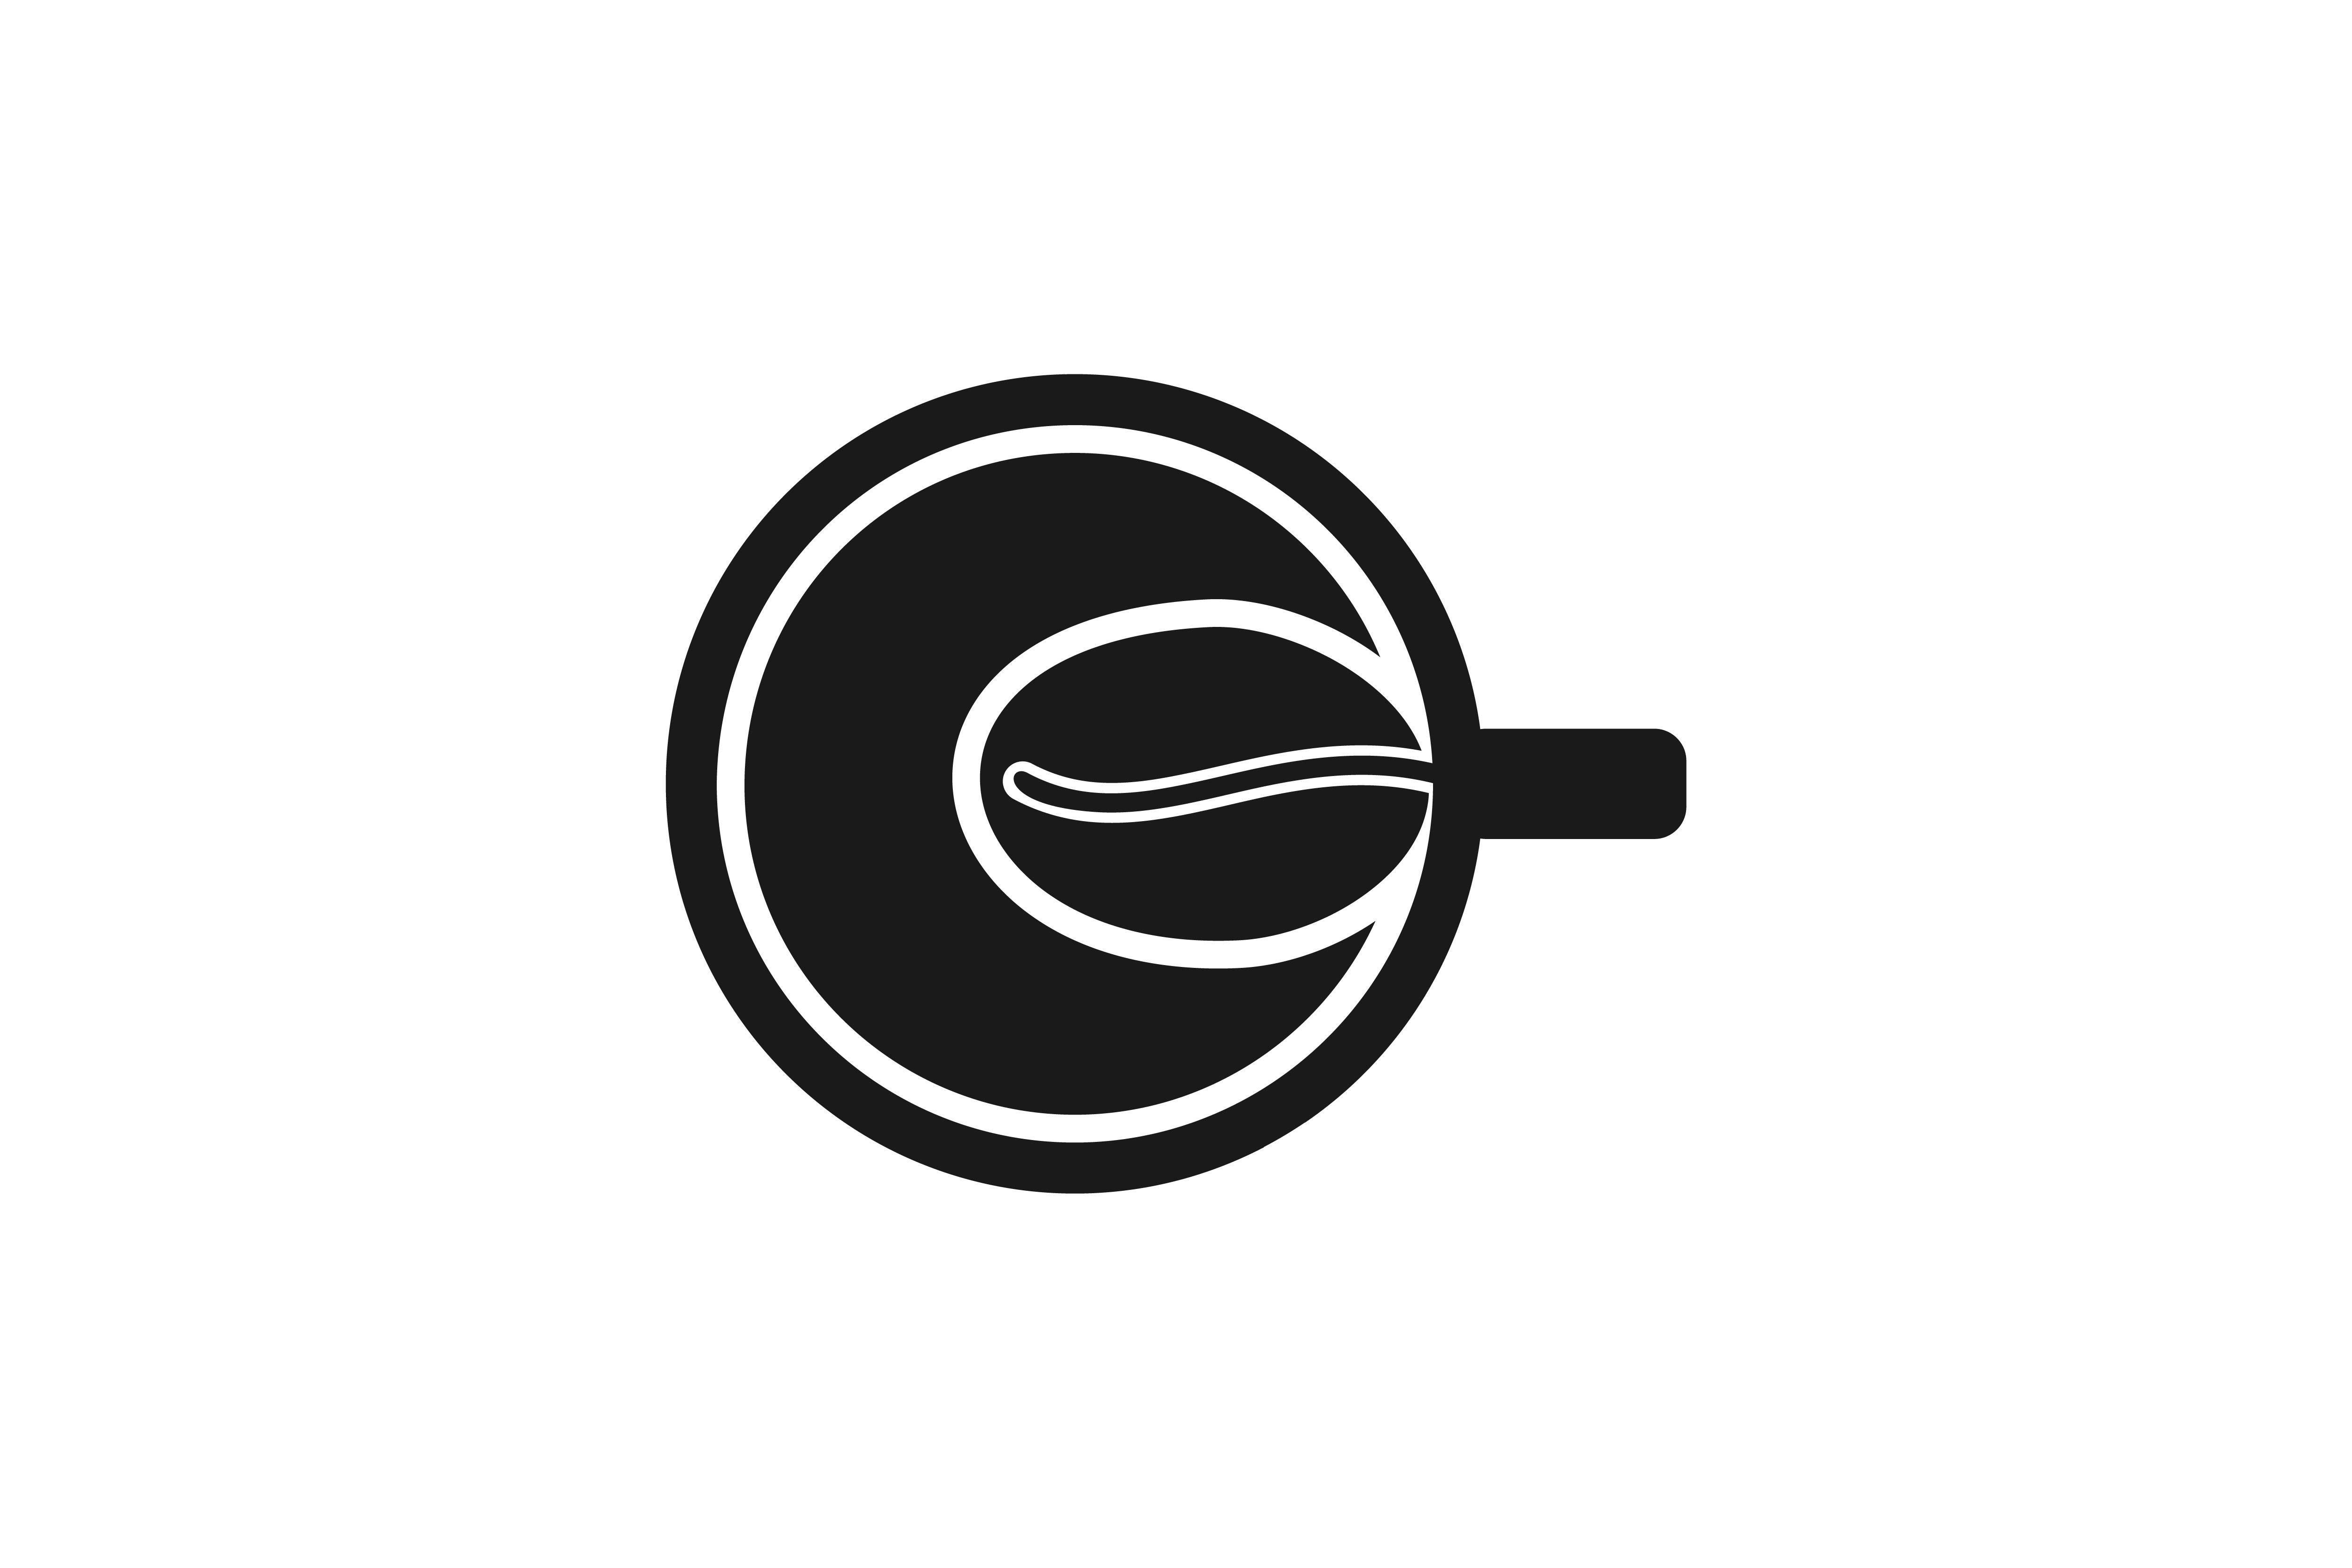 Bean Logo - Cup and coffee bean logo